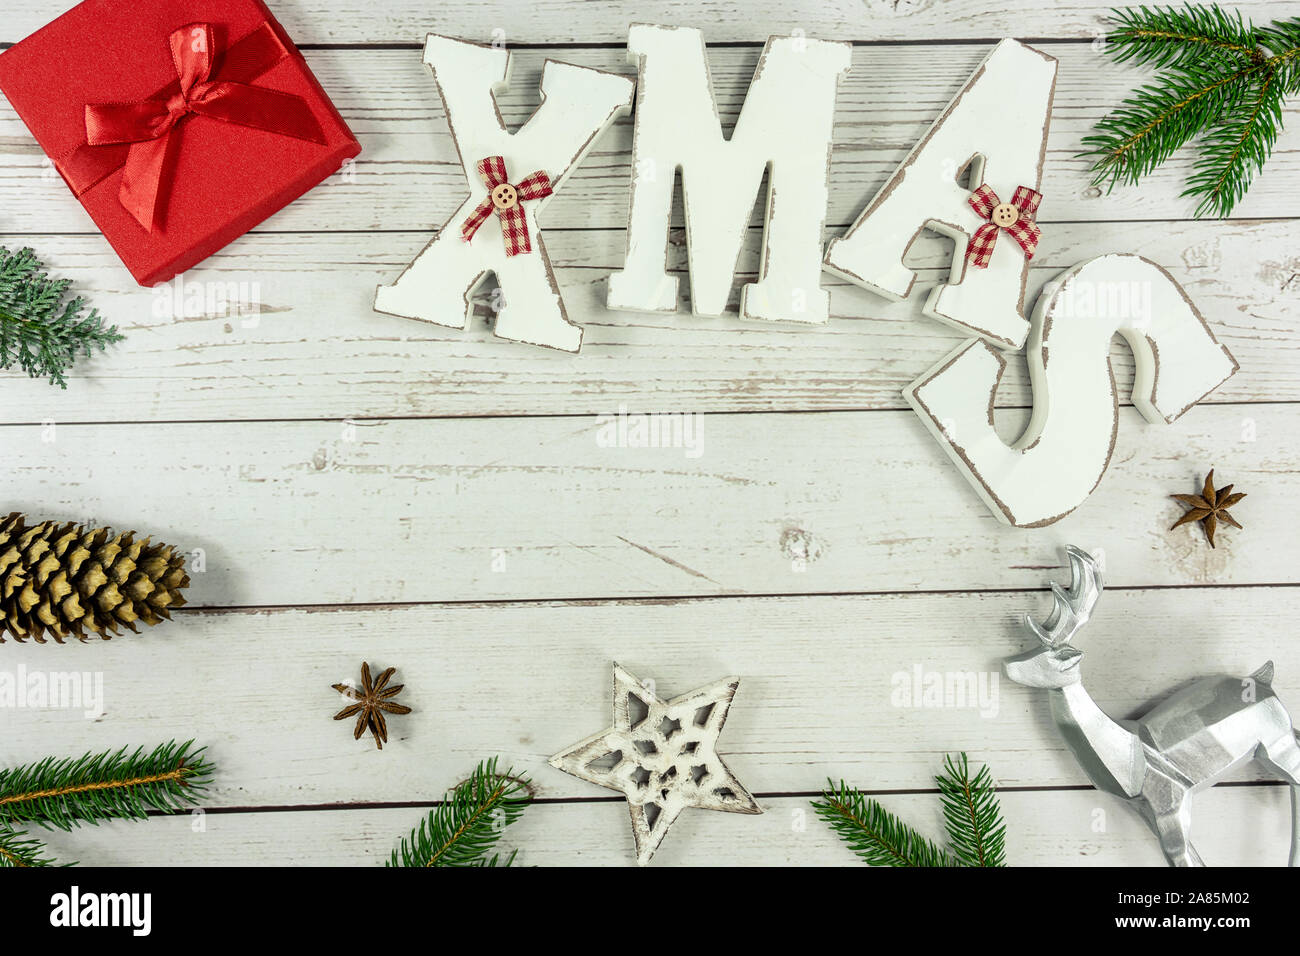 Arrière-plan de Noël mise à plat sur le bois blanc avec boîte cadeau rouge et d'autres textes de Noël Décoration naturelle Banque D'Images